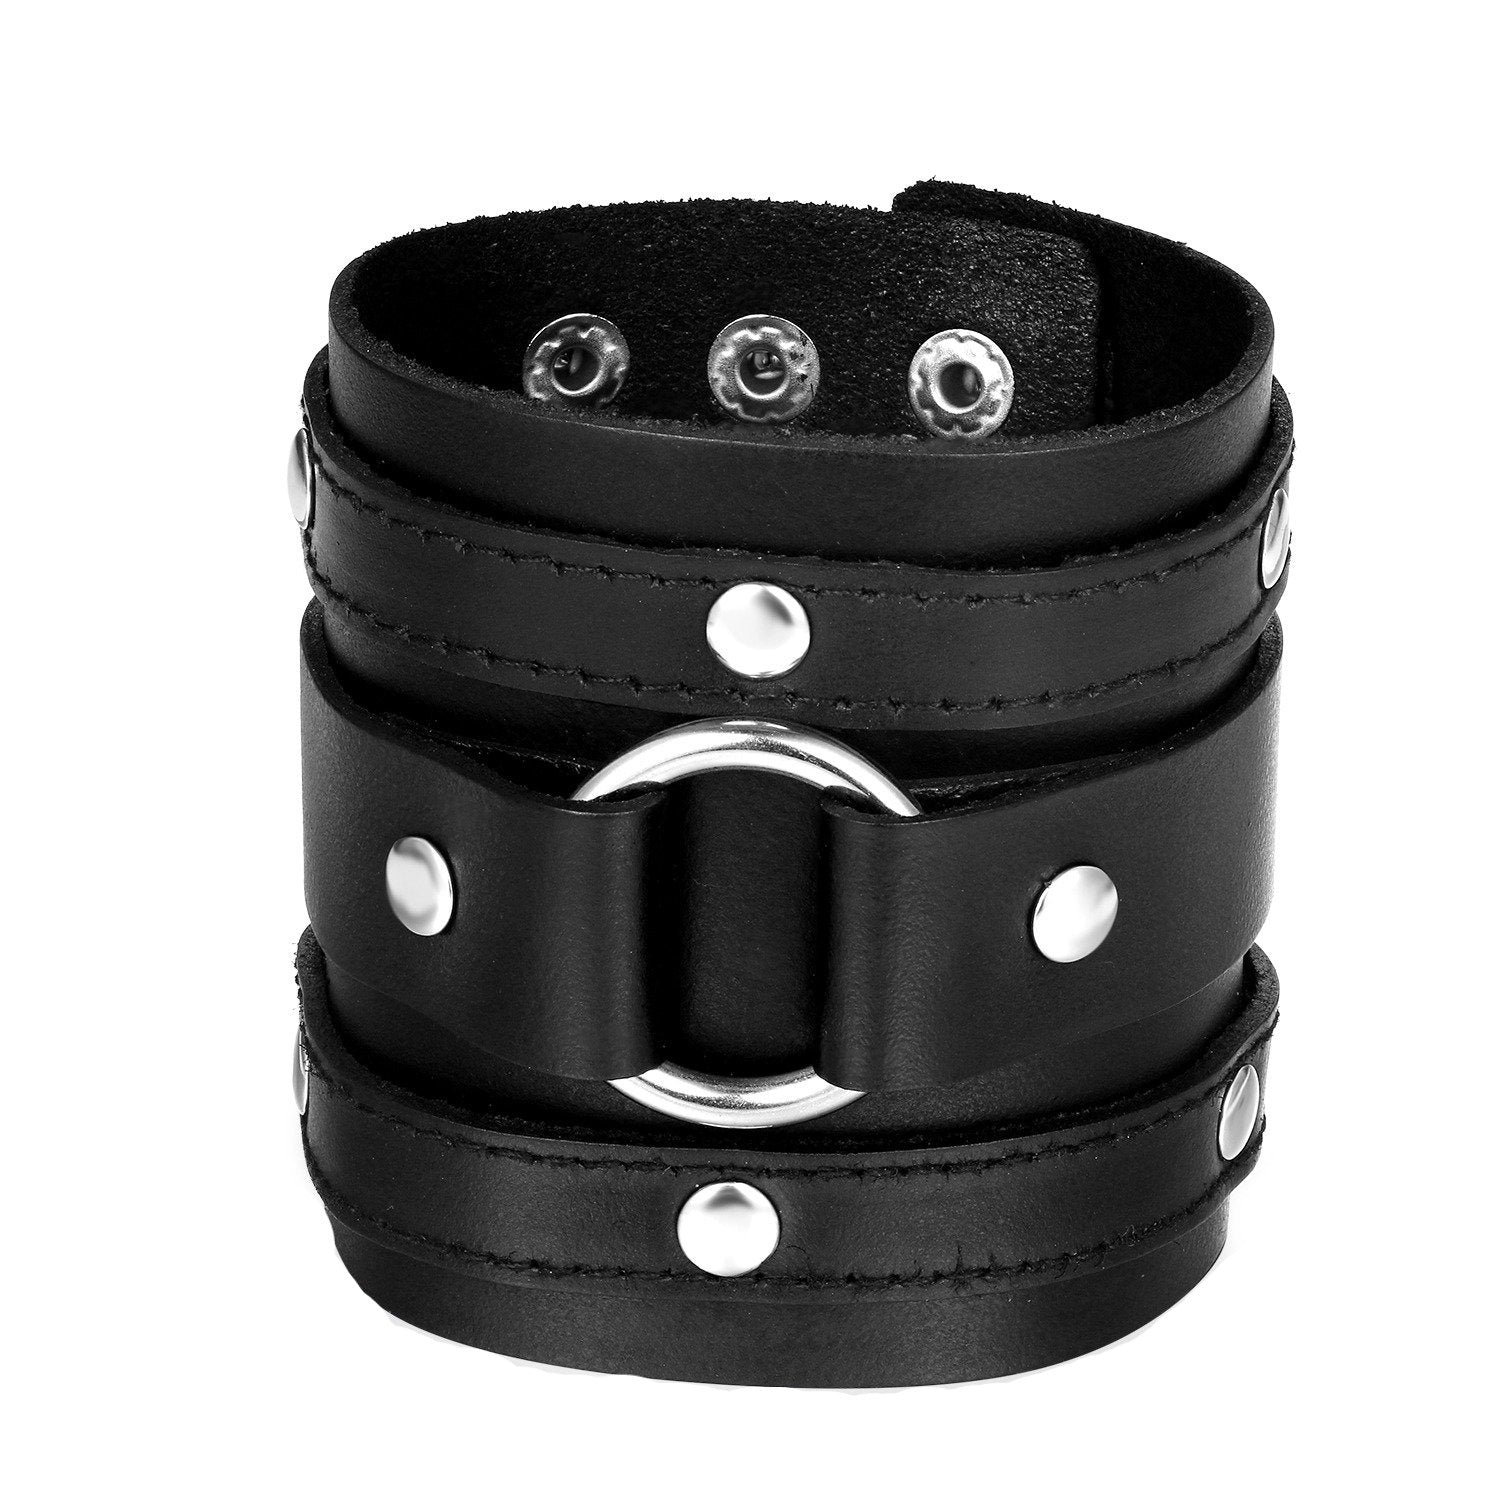 Classic Rock Style Bracelets / Cool Biker Jewelry For Men and Women / Black Adjustable Bracelet - HARD'N'HEAVY